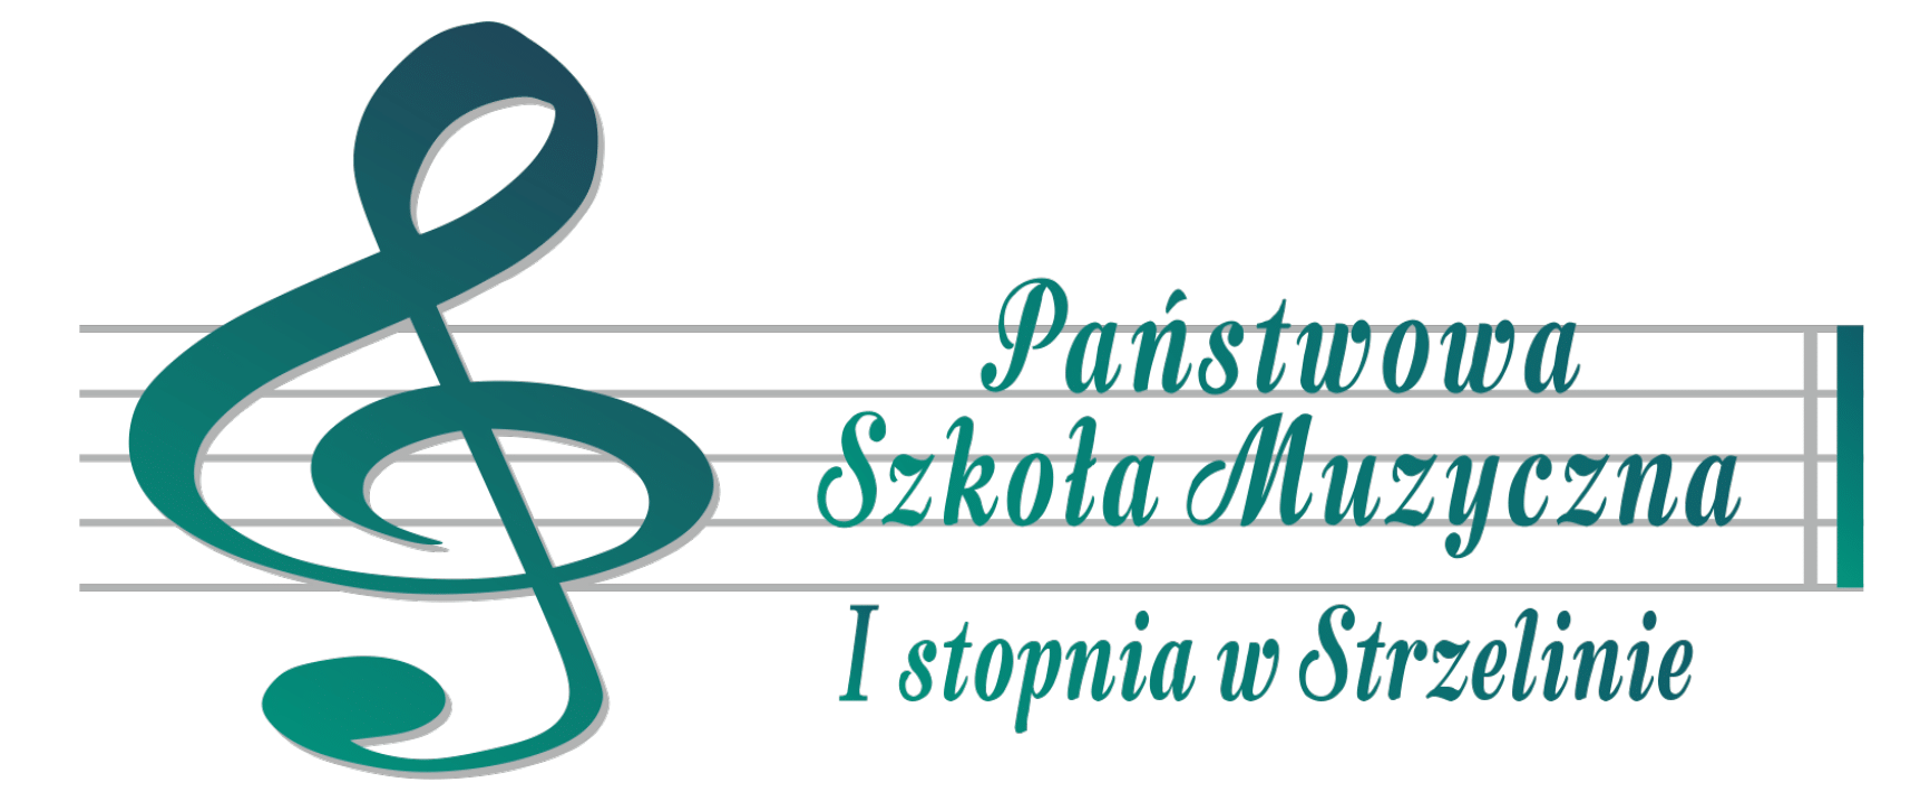 Logo przedstawia zielony klucz wiolinowy oraz napis "Państwowa Szkoła Muzyczna I stopnia w Strzelinie" znajdujący się na pięciolinii 